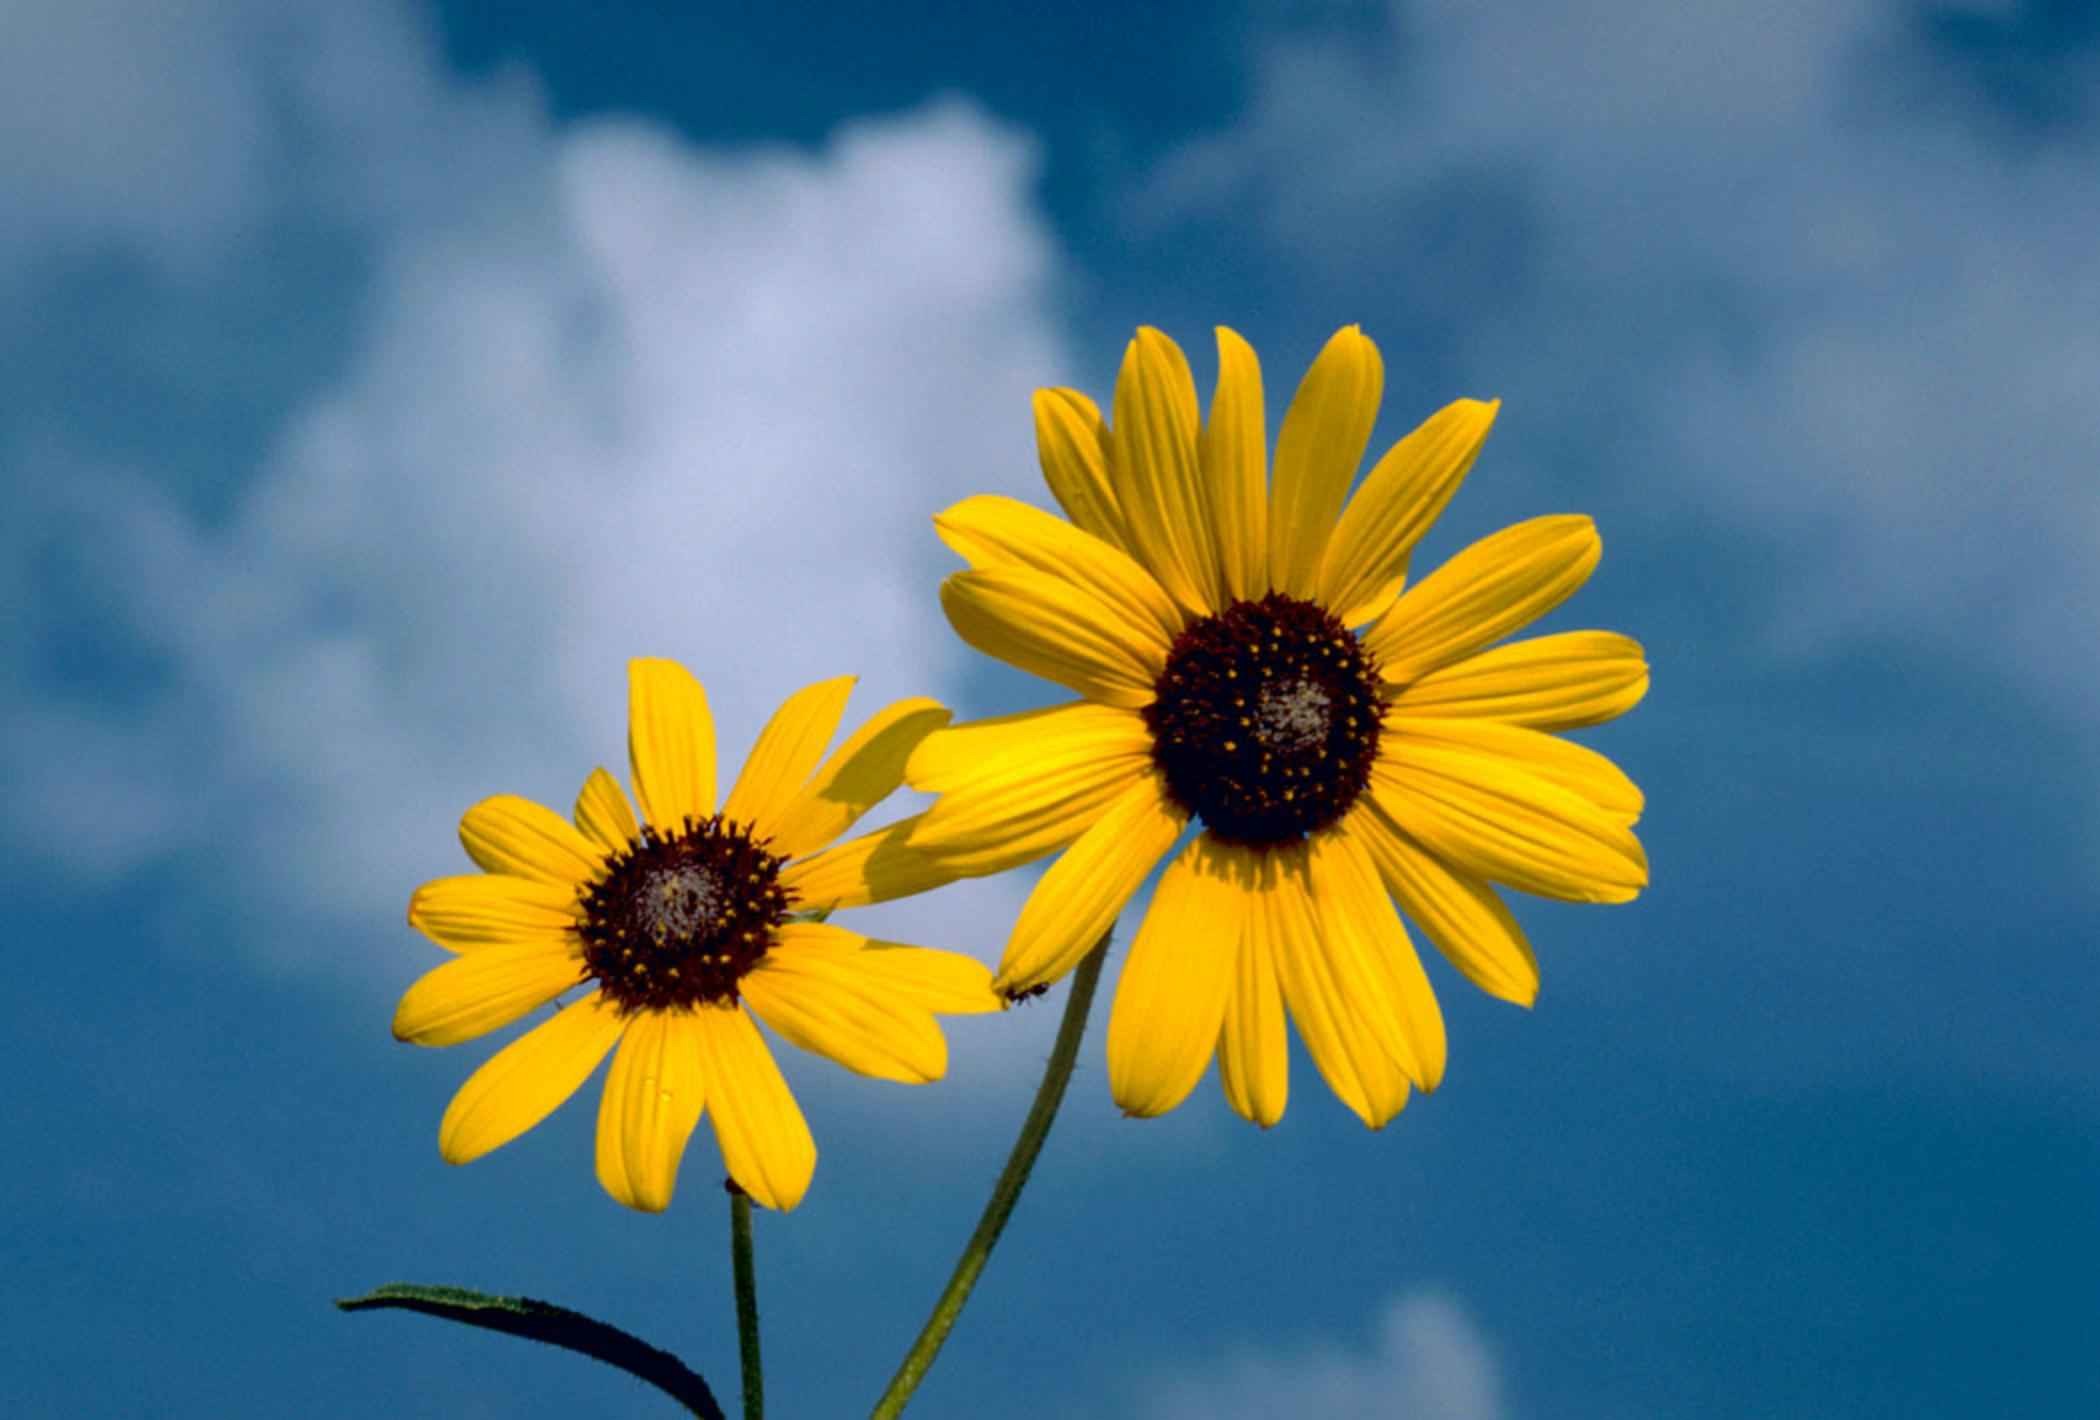 2100x1420 File:Sunflower flower against blue sky background.jpg